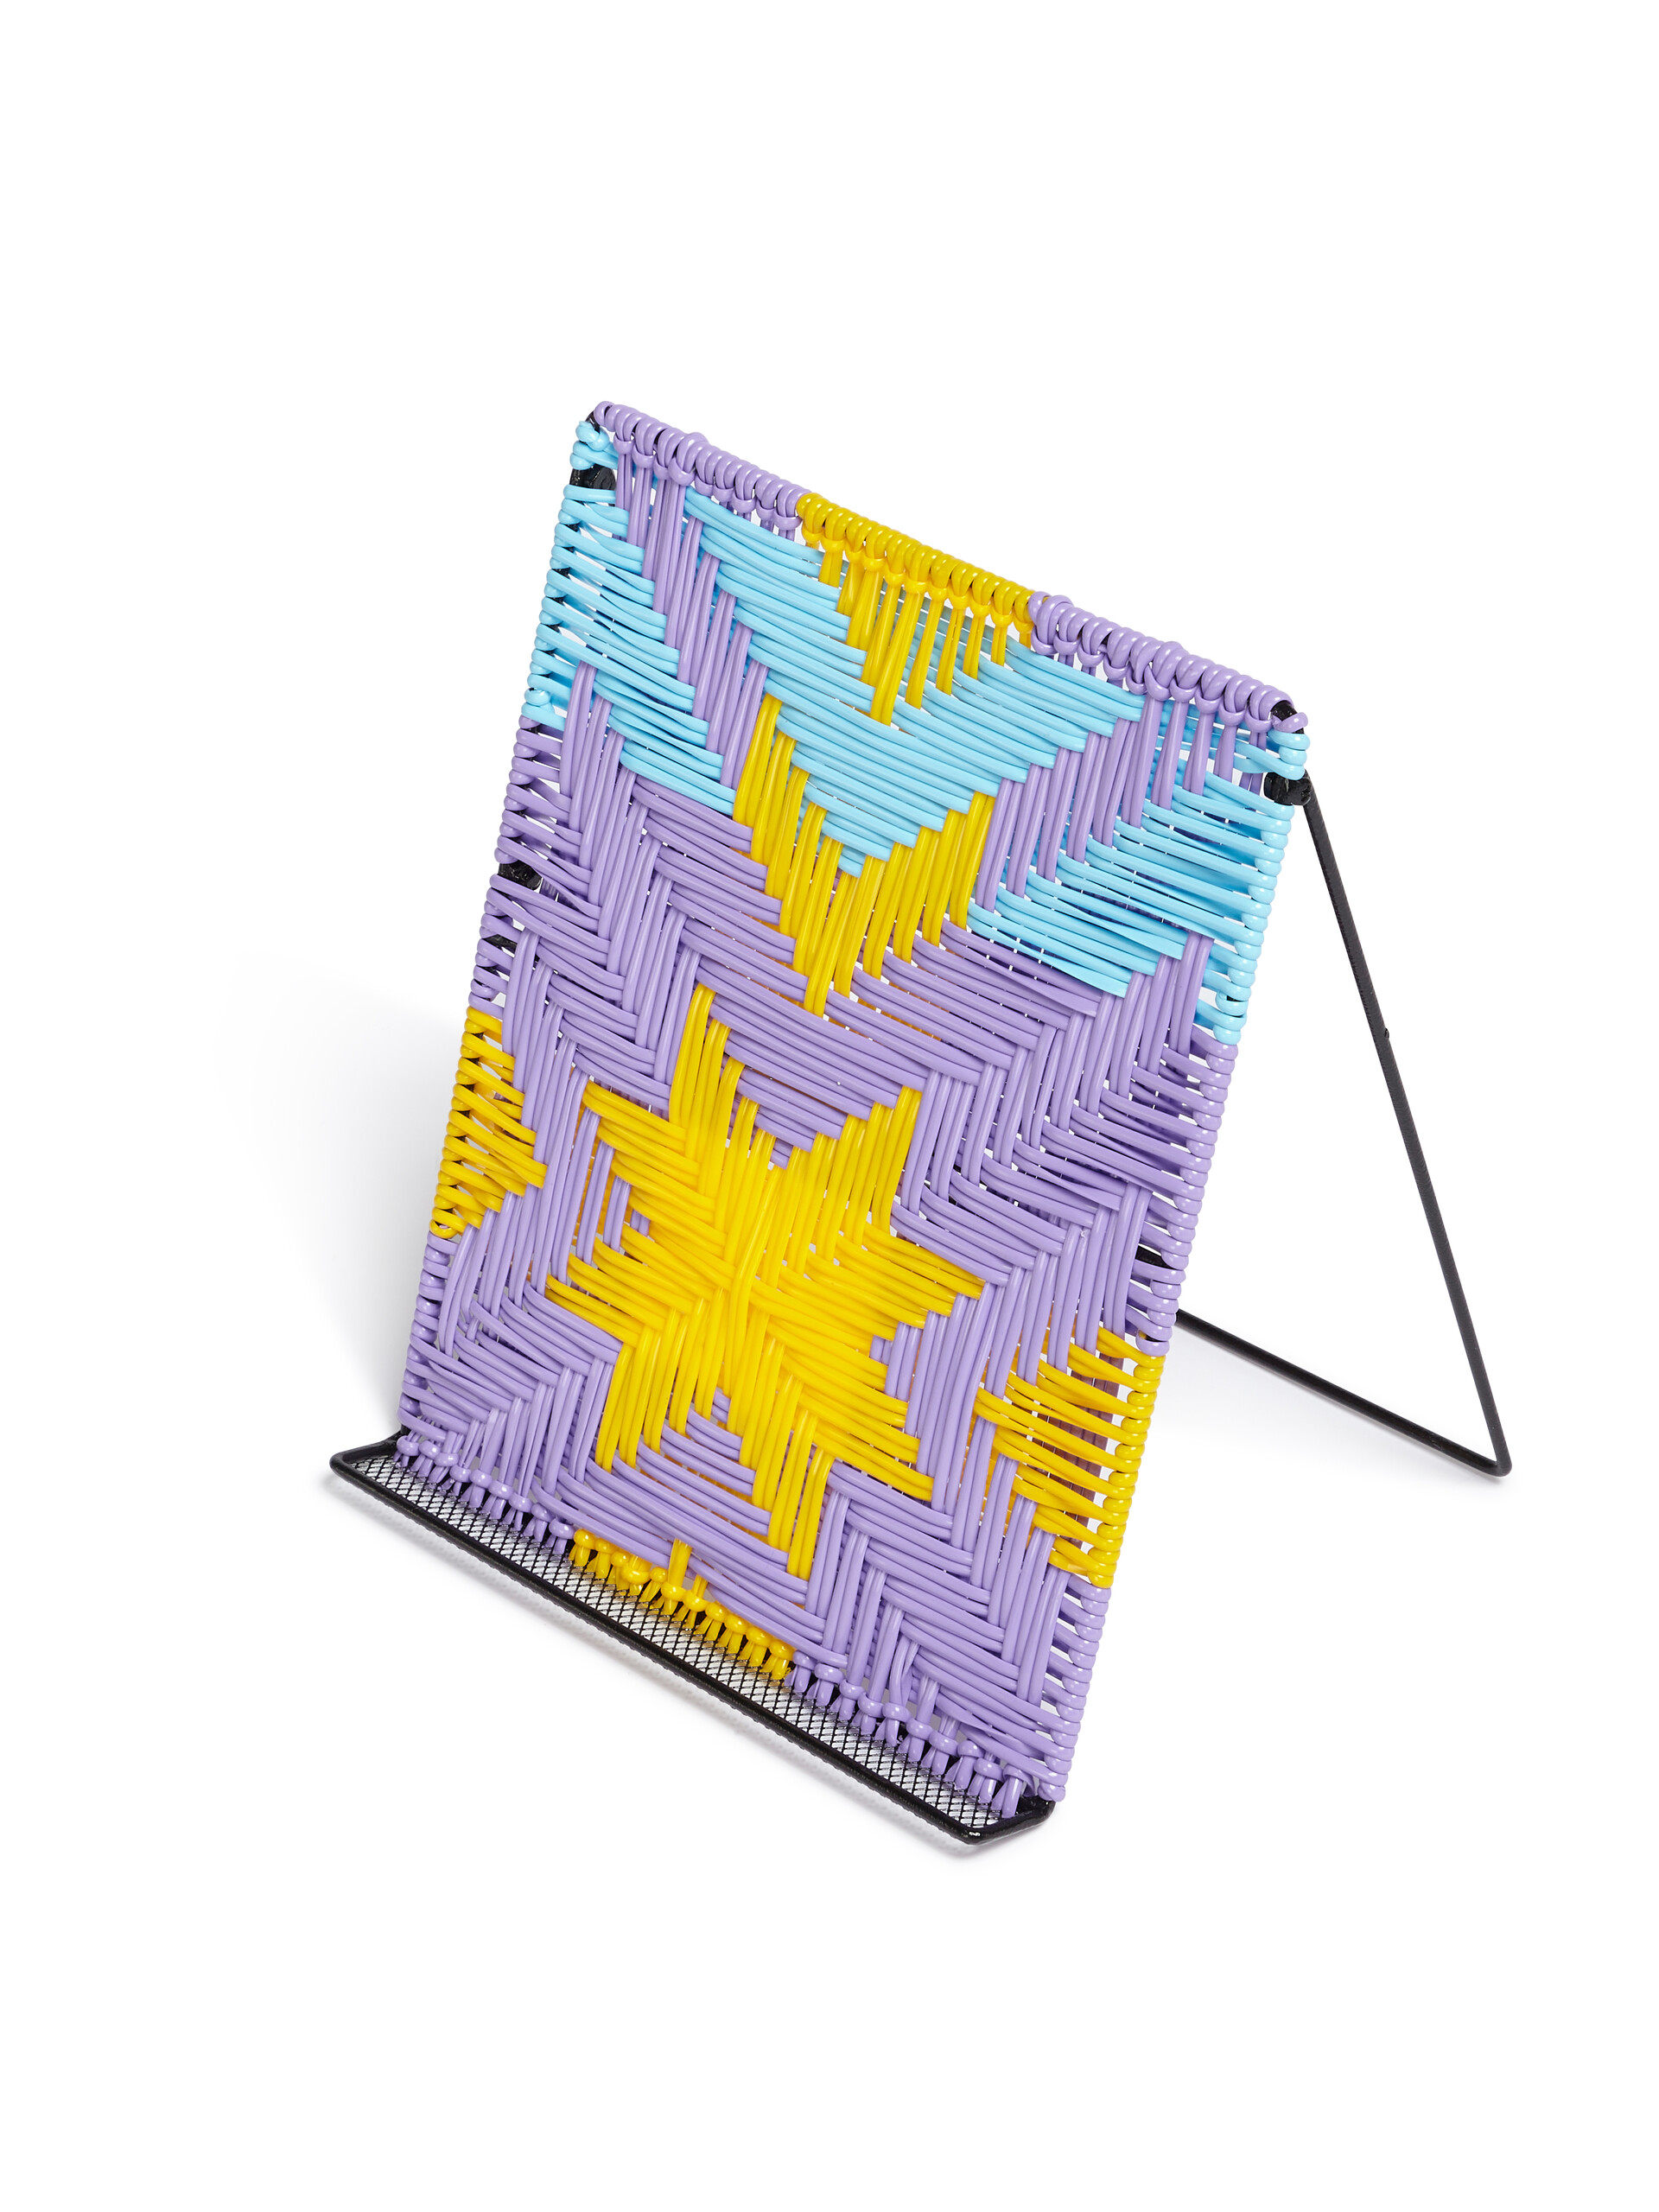 MARNI MARKET multicolor purple woven iPad stand - Furniture - Image 4